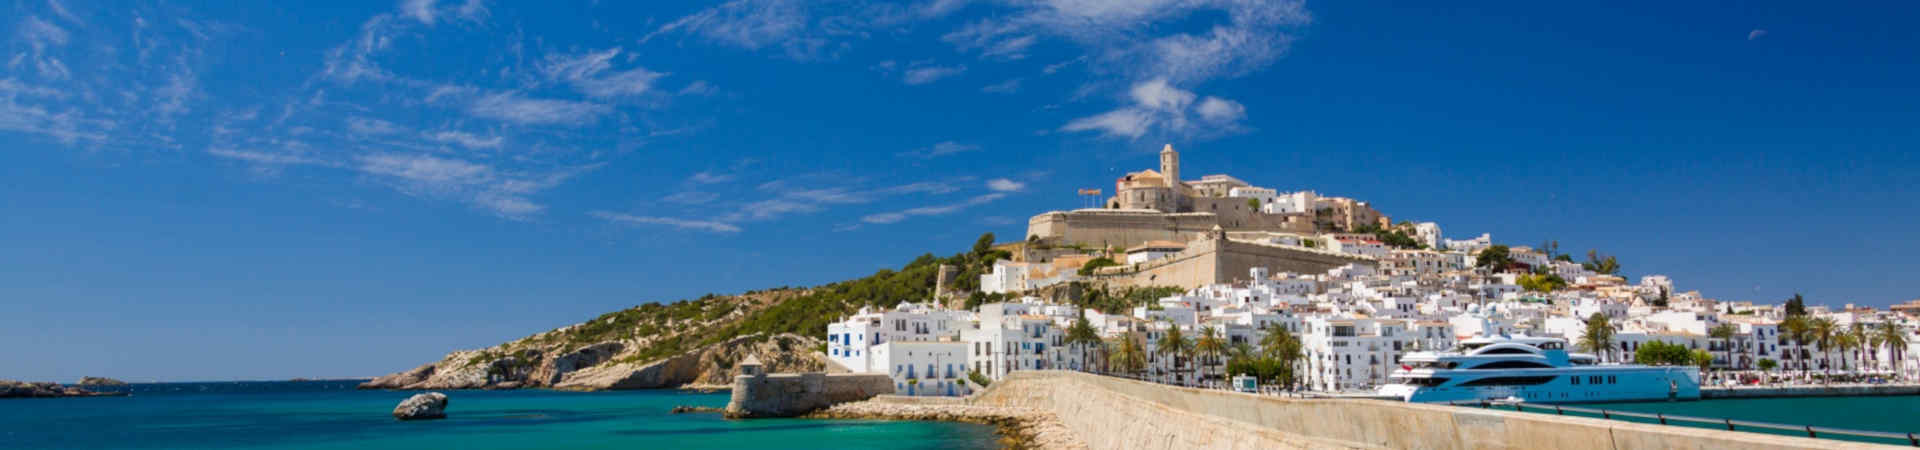 Imatge recurs del port de destinació Eivissa per a la ruta en ferry Barcelona - Eivissa